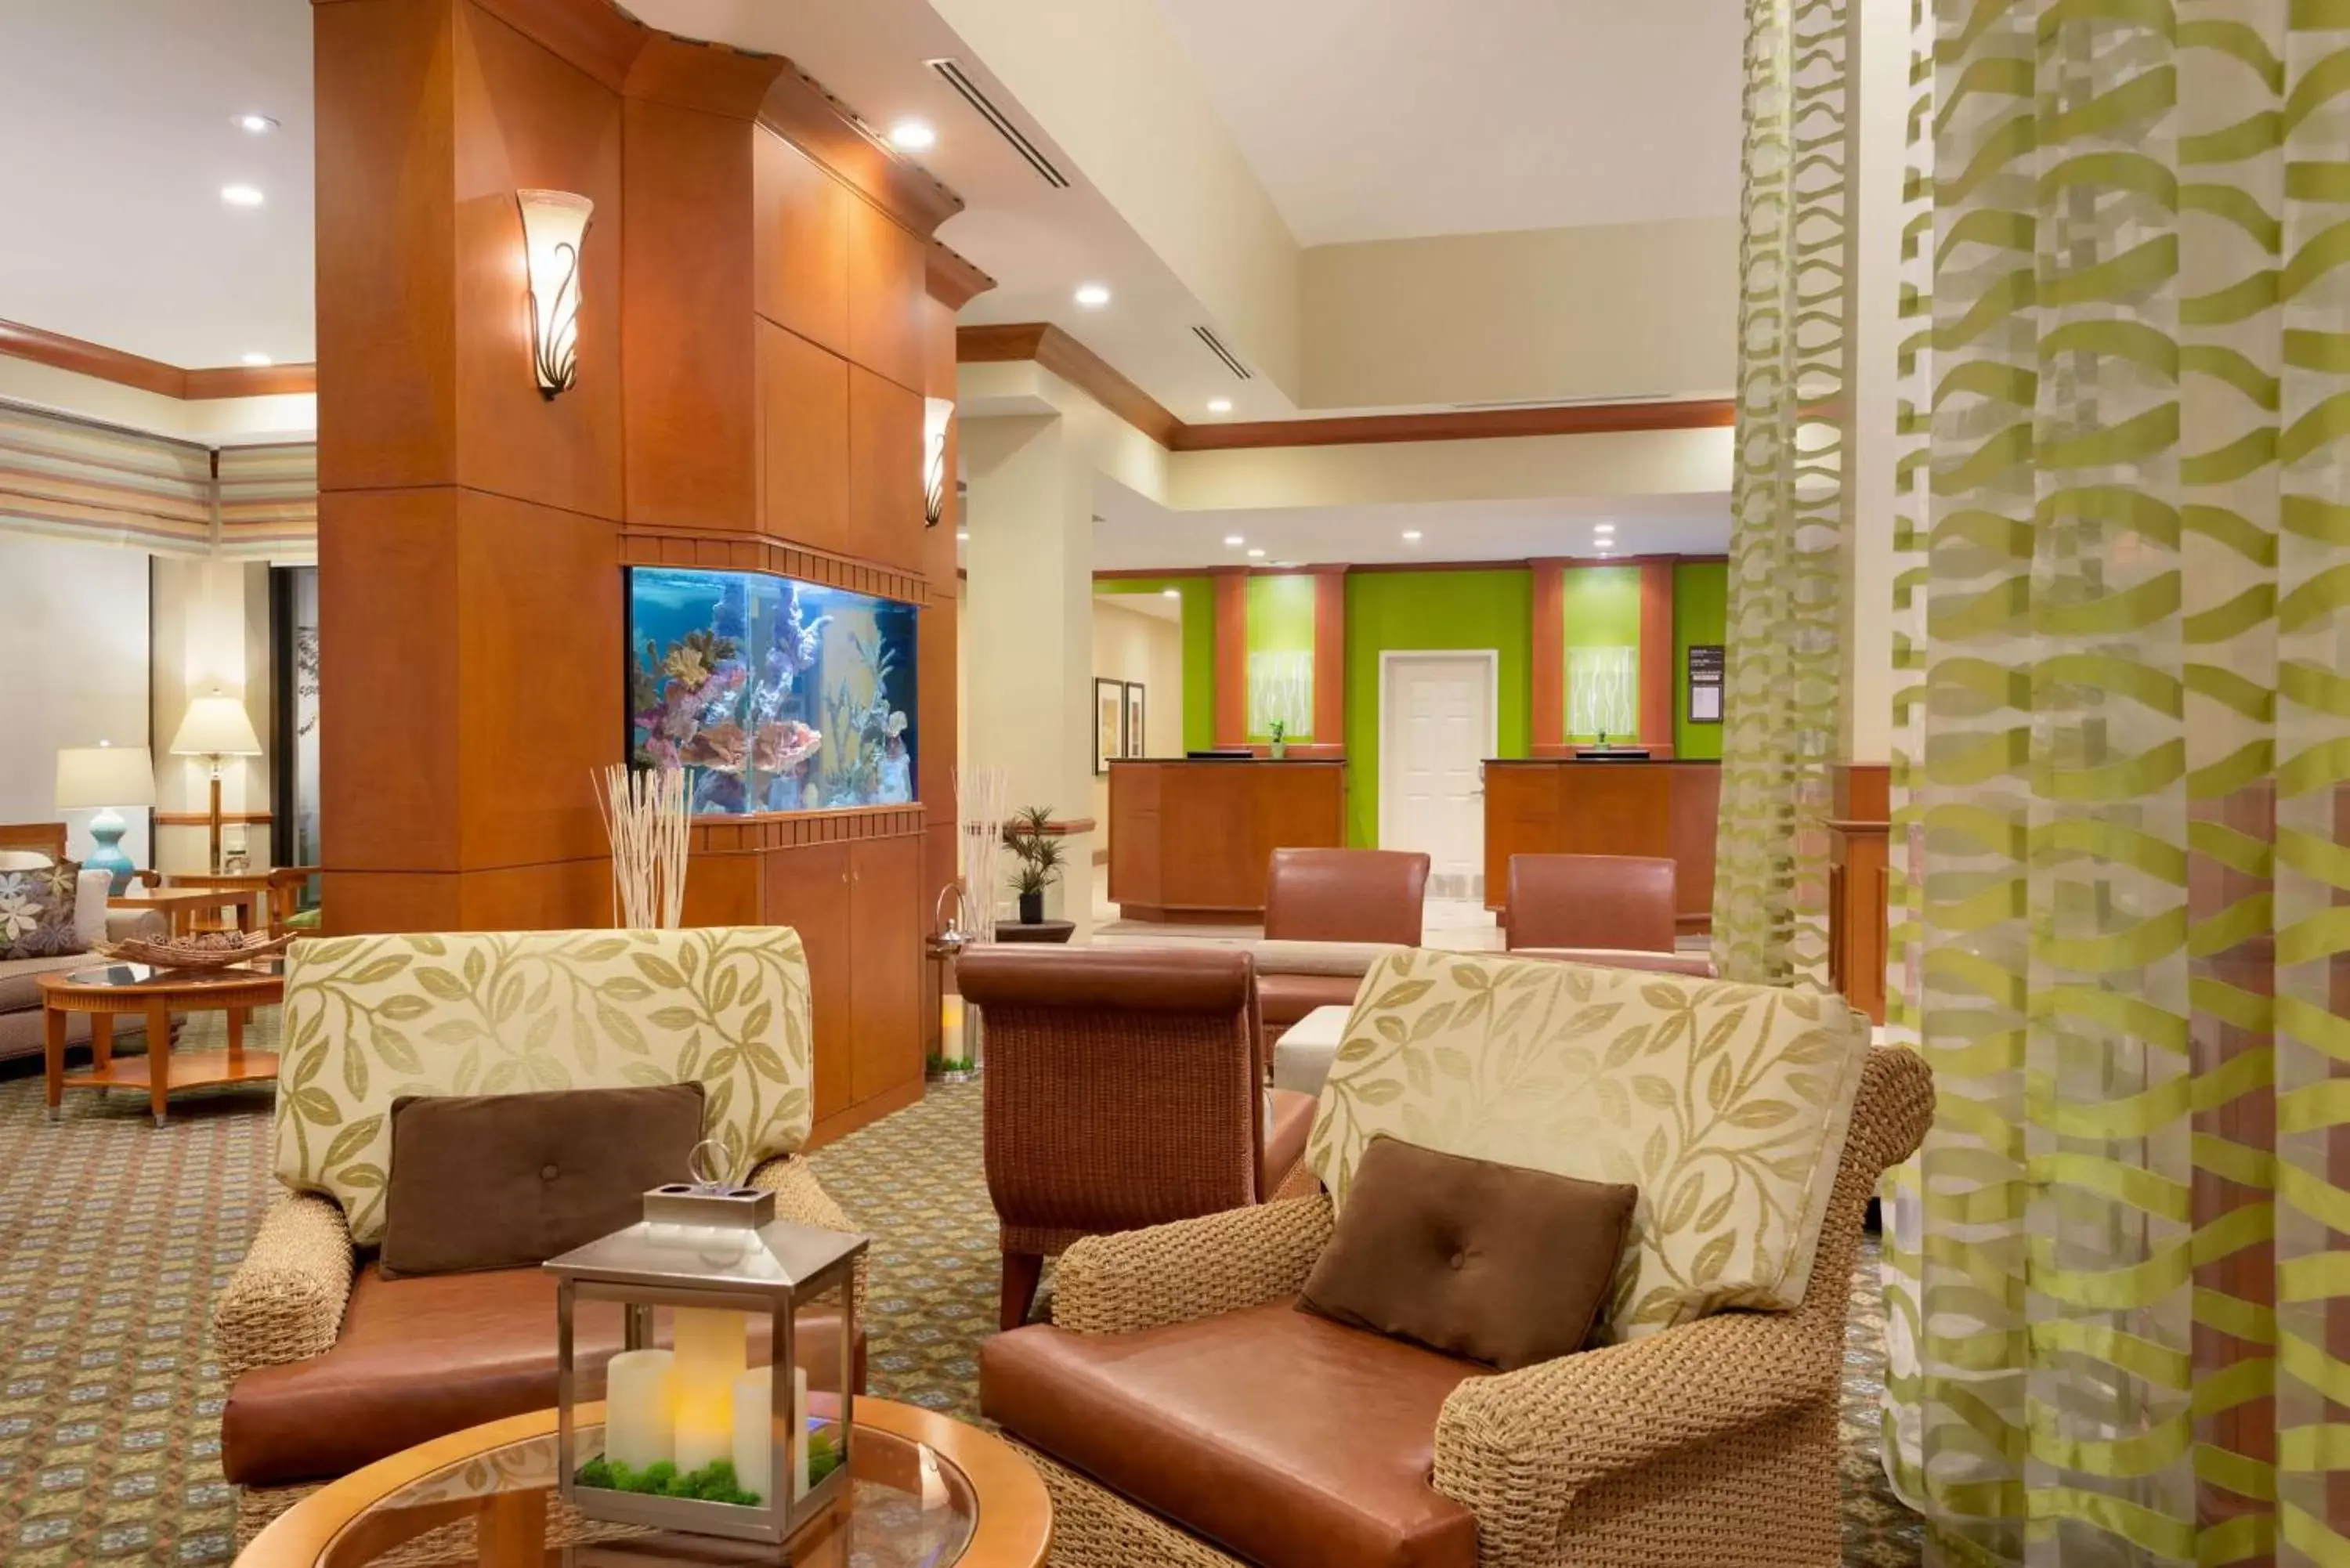 Lobby or reception, Lobby/Reception in Hilton Garden Inn Palm Coast Town Center